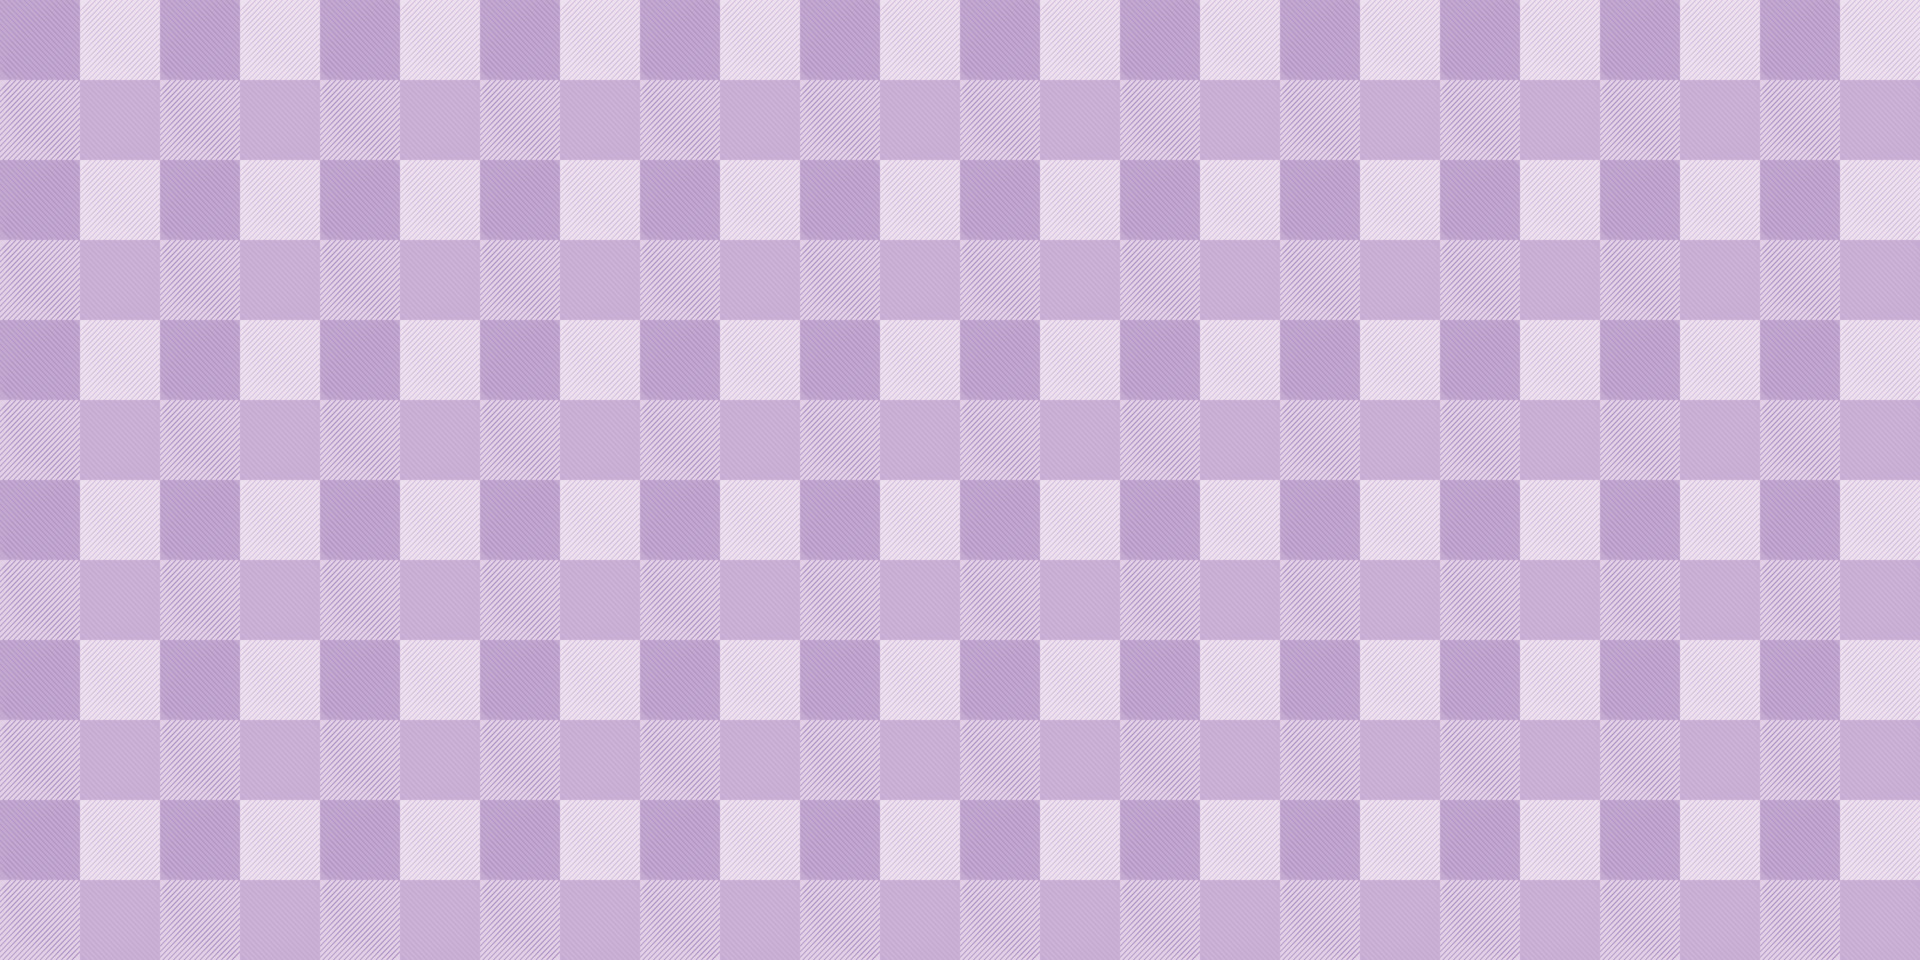 tecido xadrez têxtil moda vermelho e branco bloco de xadrez quadrado  colorido mosaico papel de parede abstrato padrão ilustração vetorial sem  costura 6749758 Vetor no Vecteezy